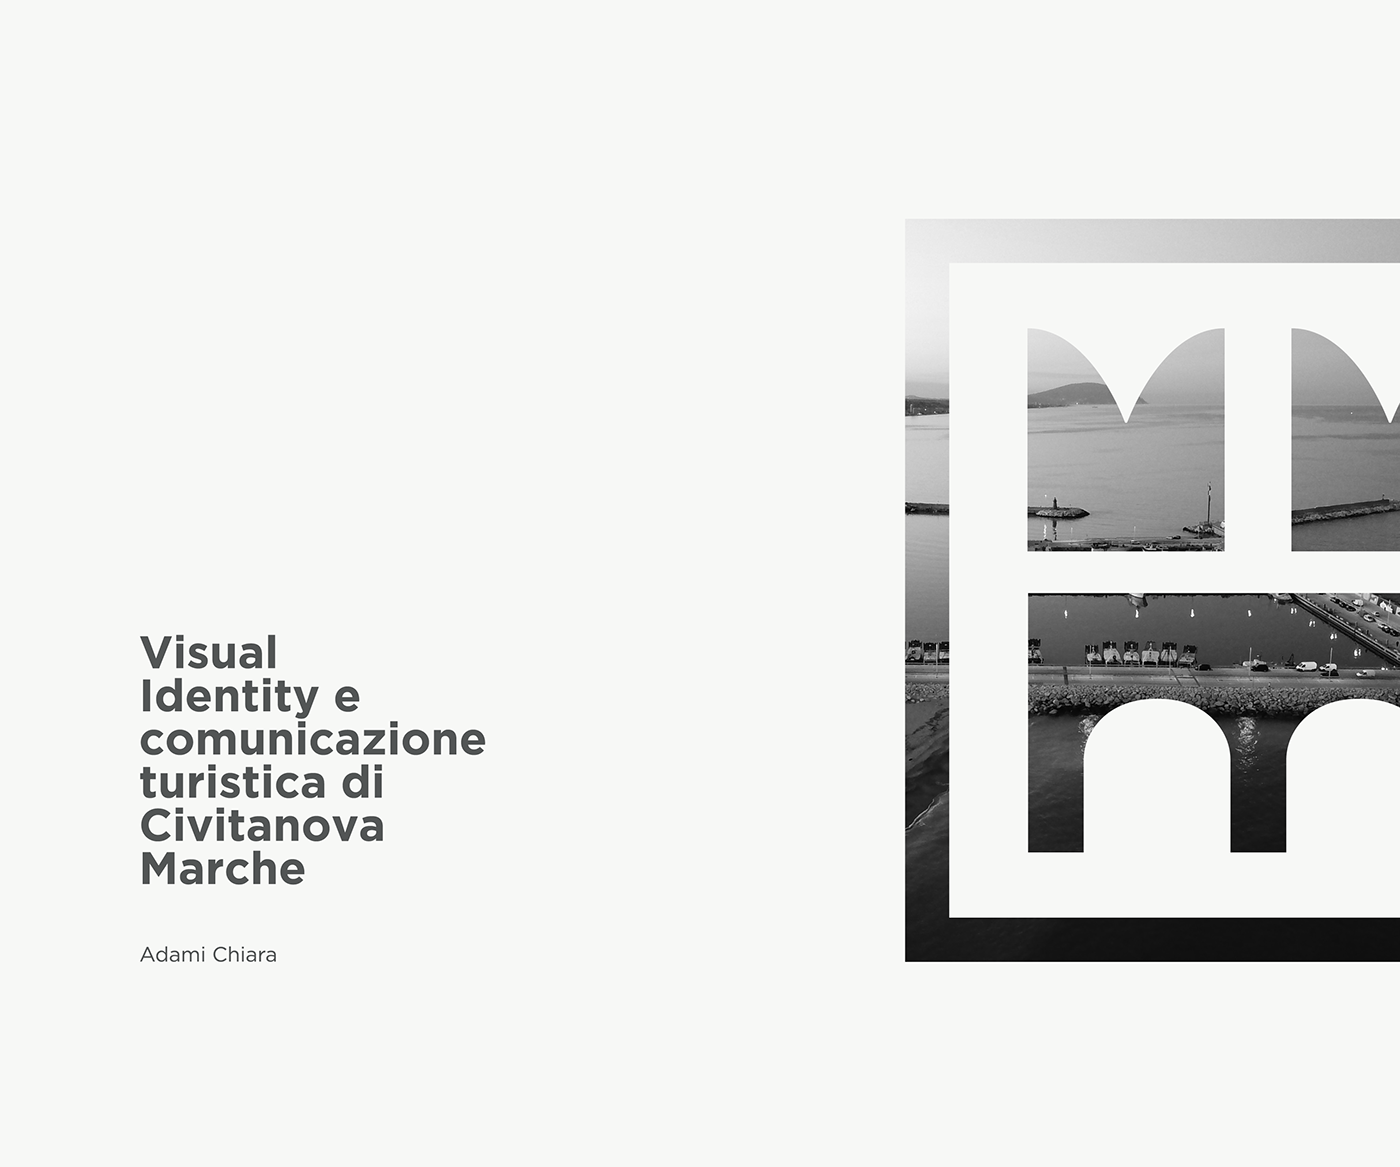 city civitanova civitanovamarche comunicazione identity visual visual identity